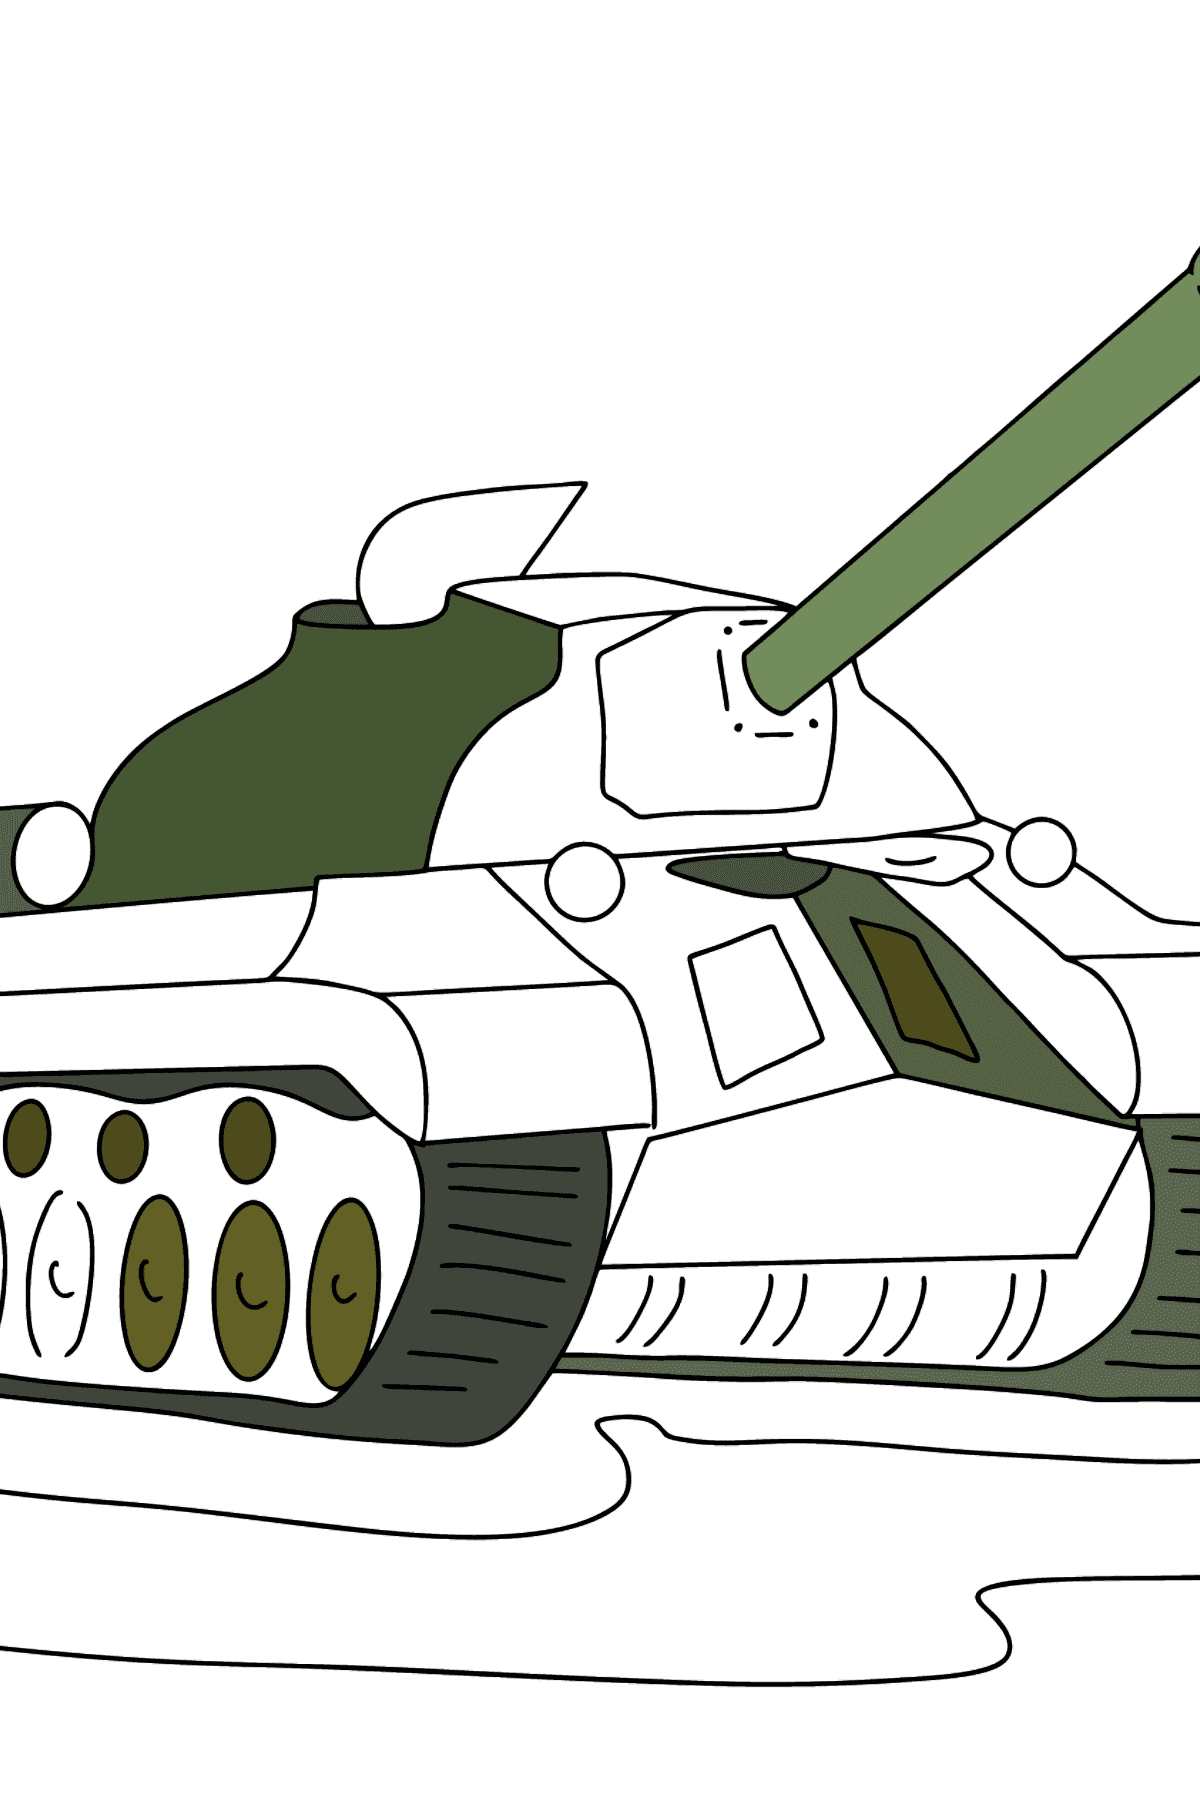 Panzer IS 3 Ausmalbild - Malvorlagen für Kinder